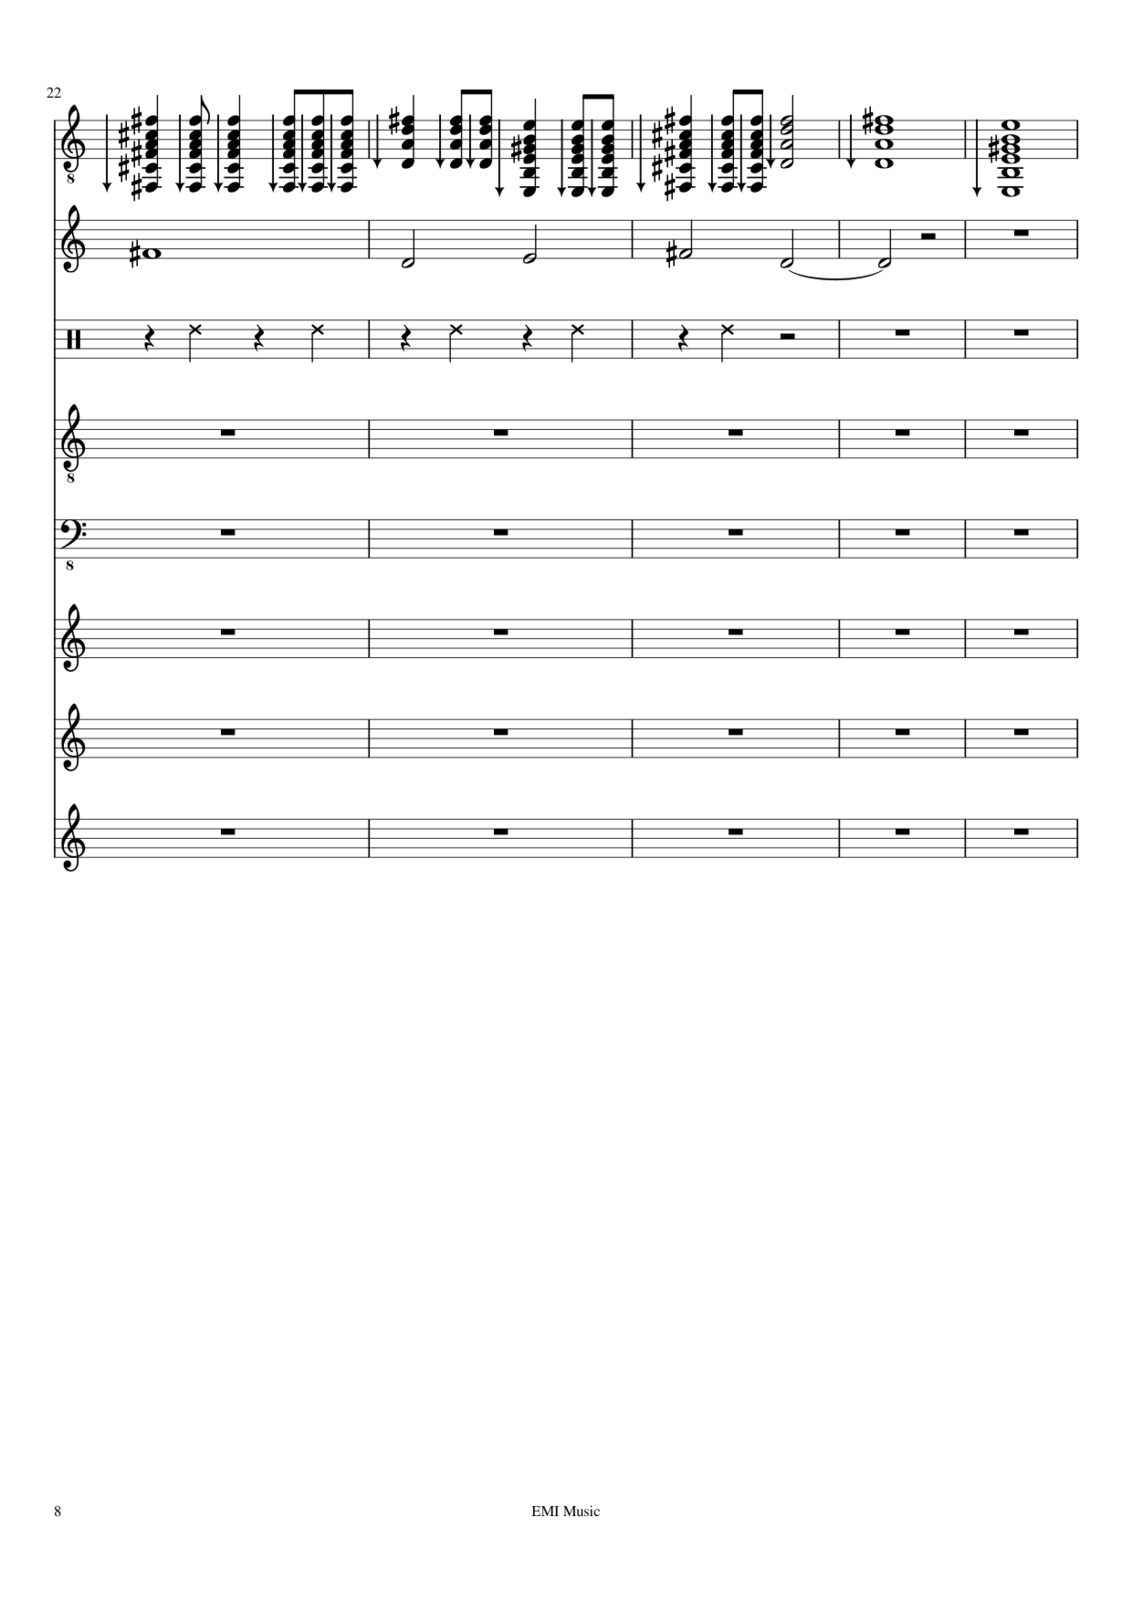 Prervannaya lyubov ili arbuznaya korka slide, Image 3